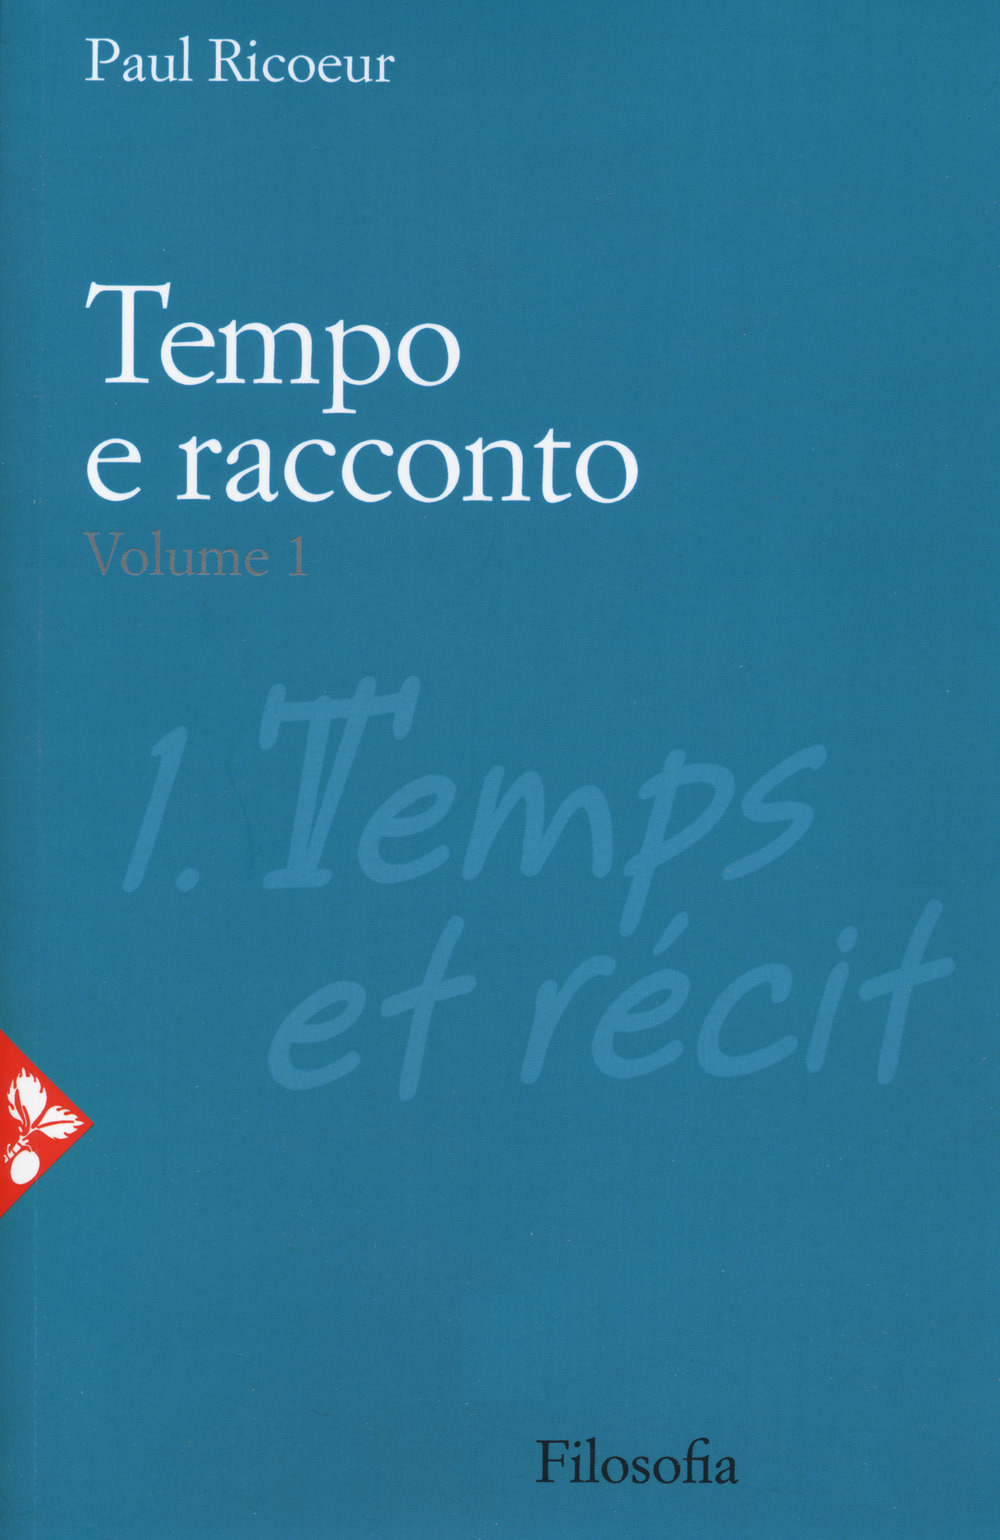 Libri Paul Ricoeur - Tempo E Racconto Vol 01 NUOVO SIGILLATO, EDIZIONE DEL 26/10/2020 SUBITO DISPONIBILE